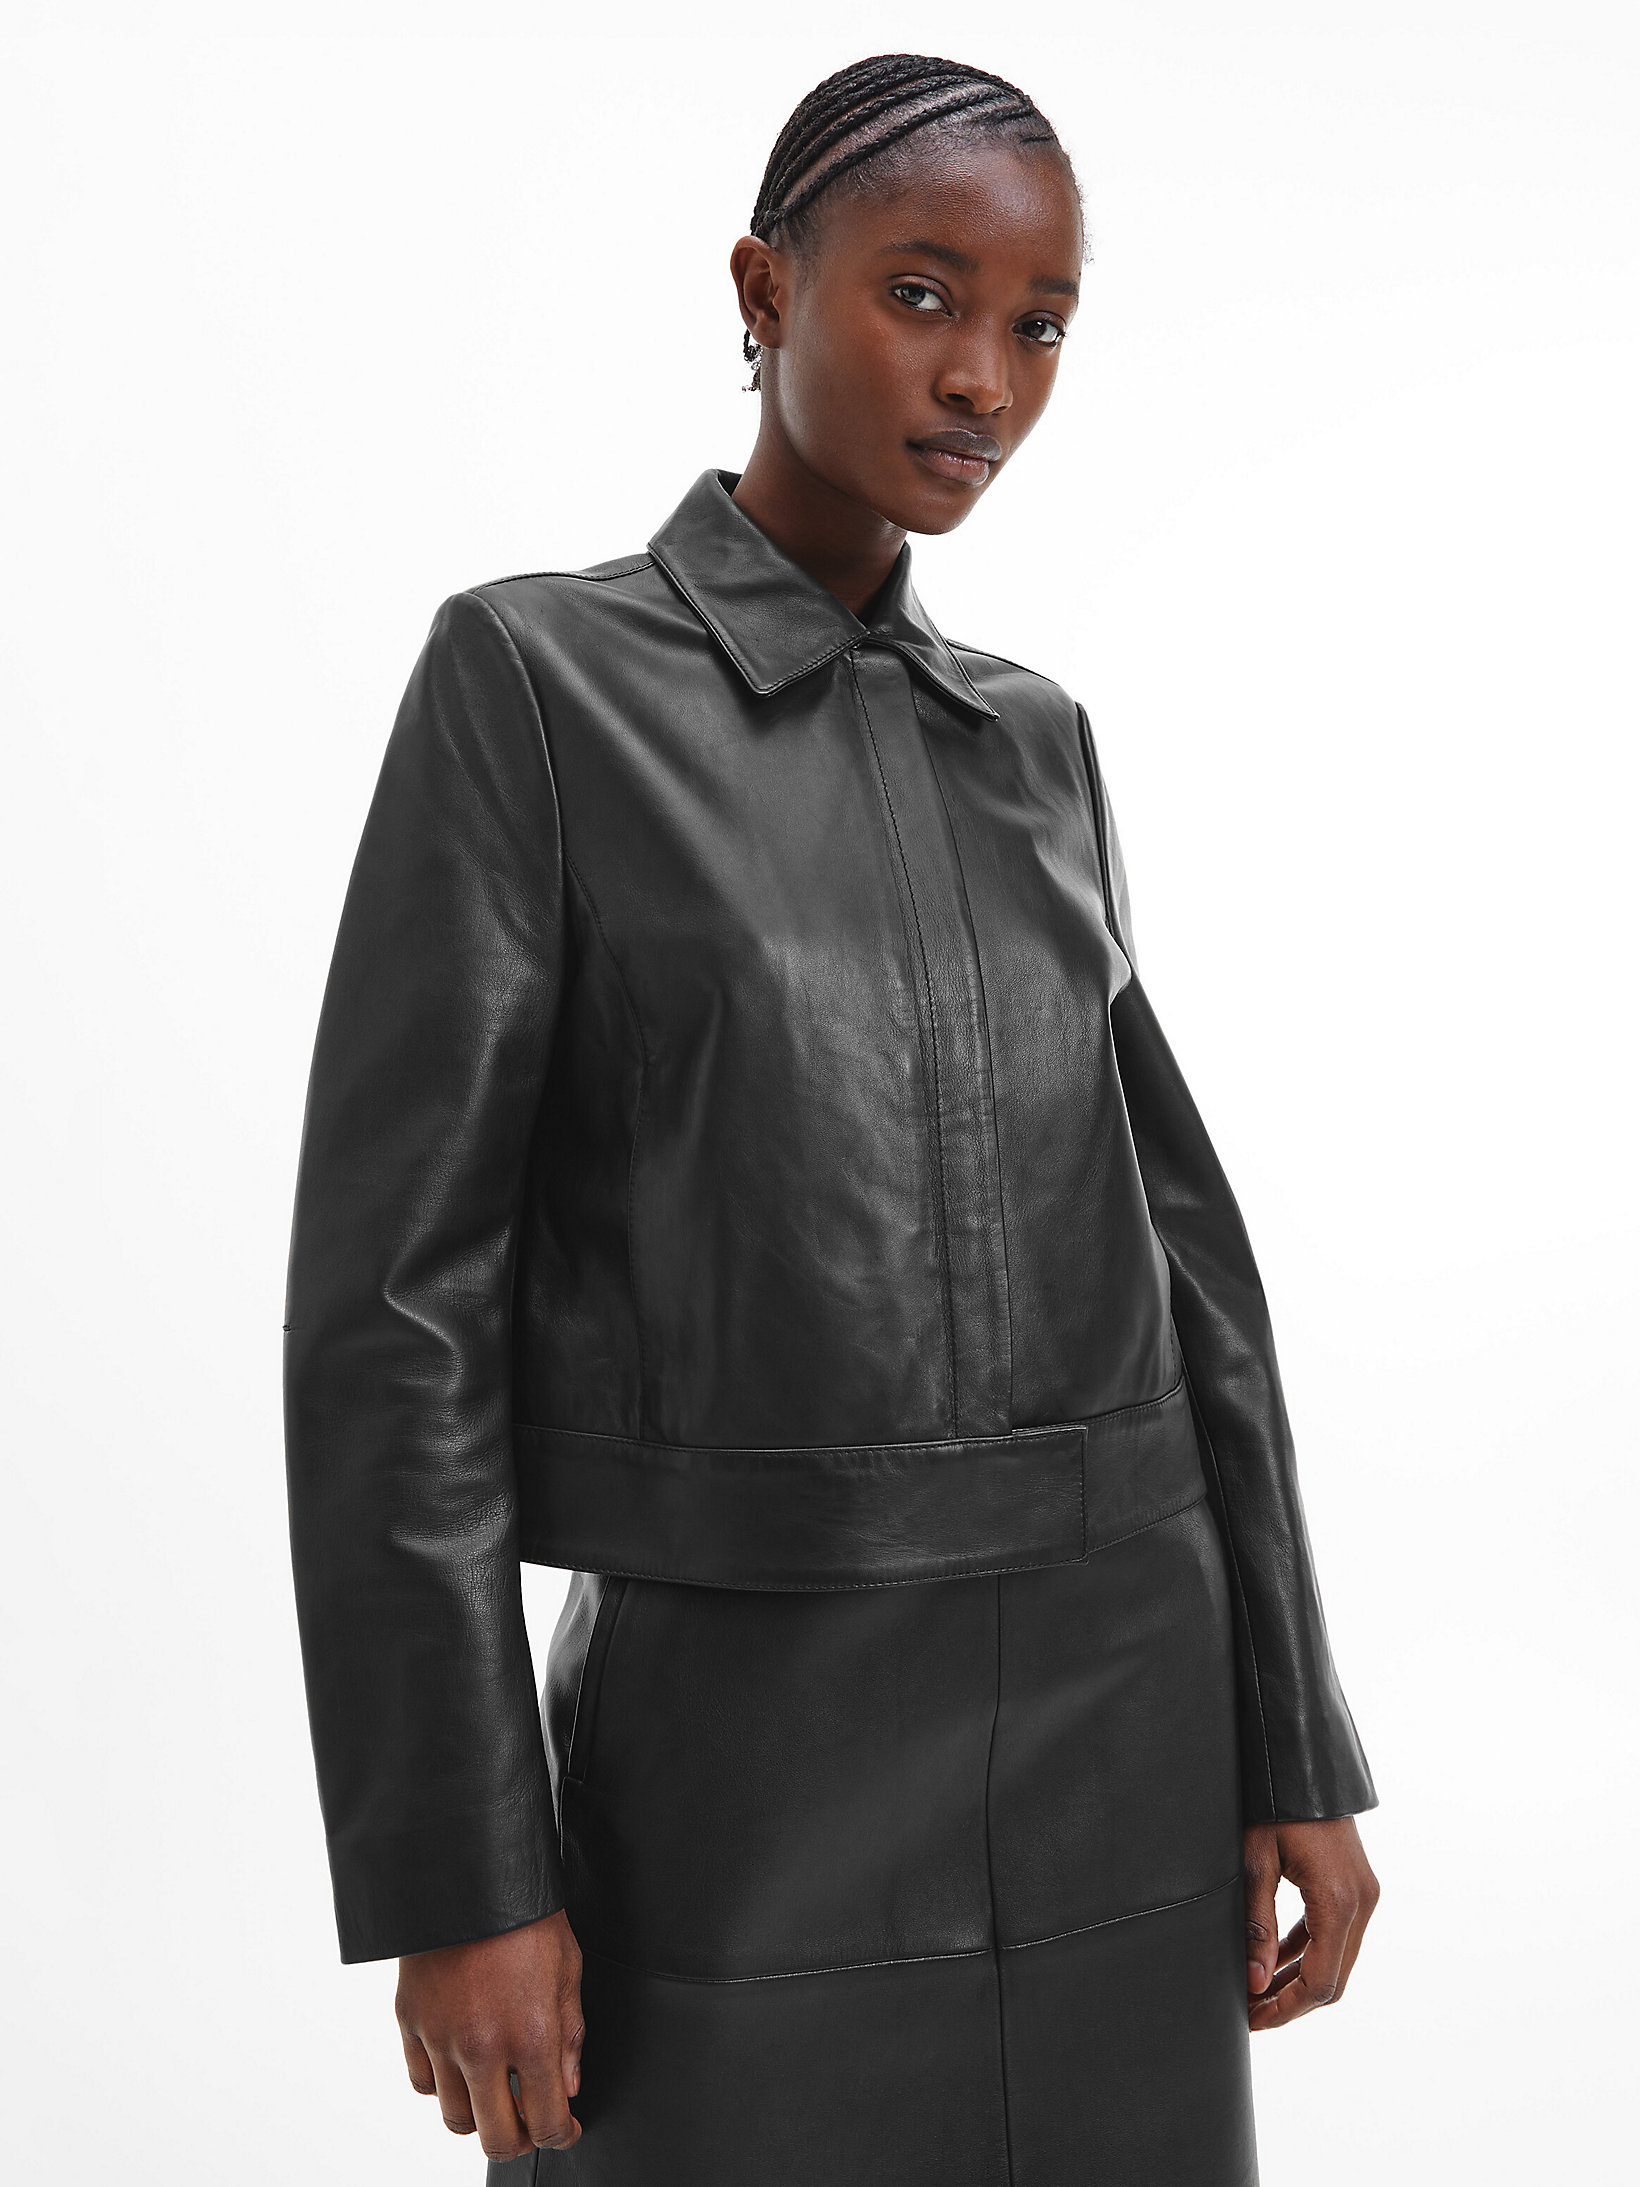 CK Black Leather Biker Jacket undefined women Calvin Klein